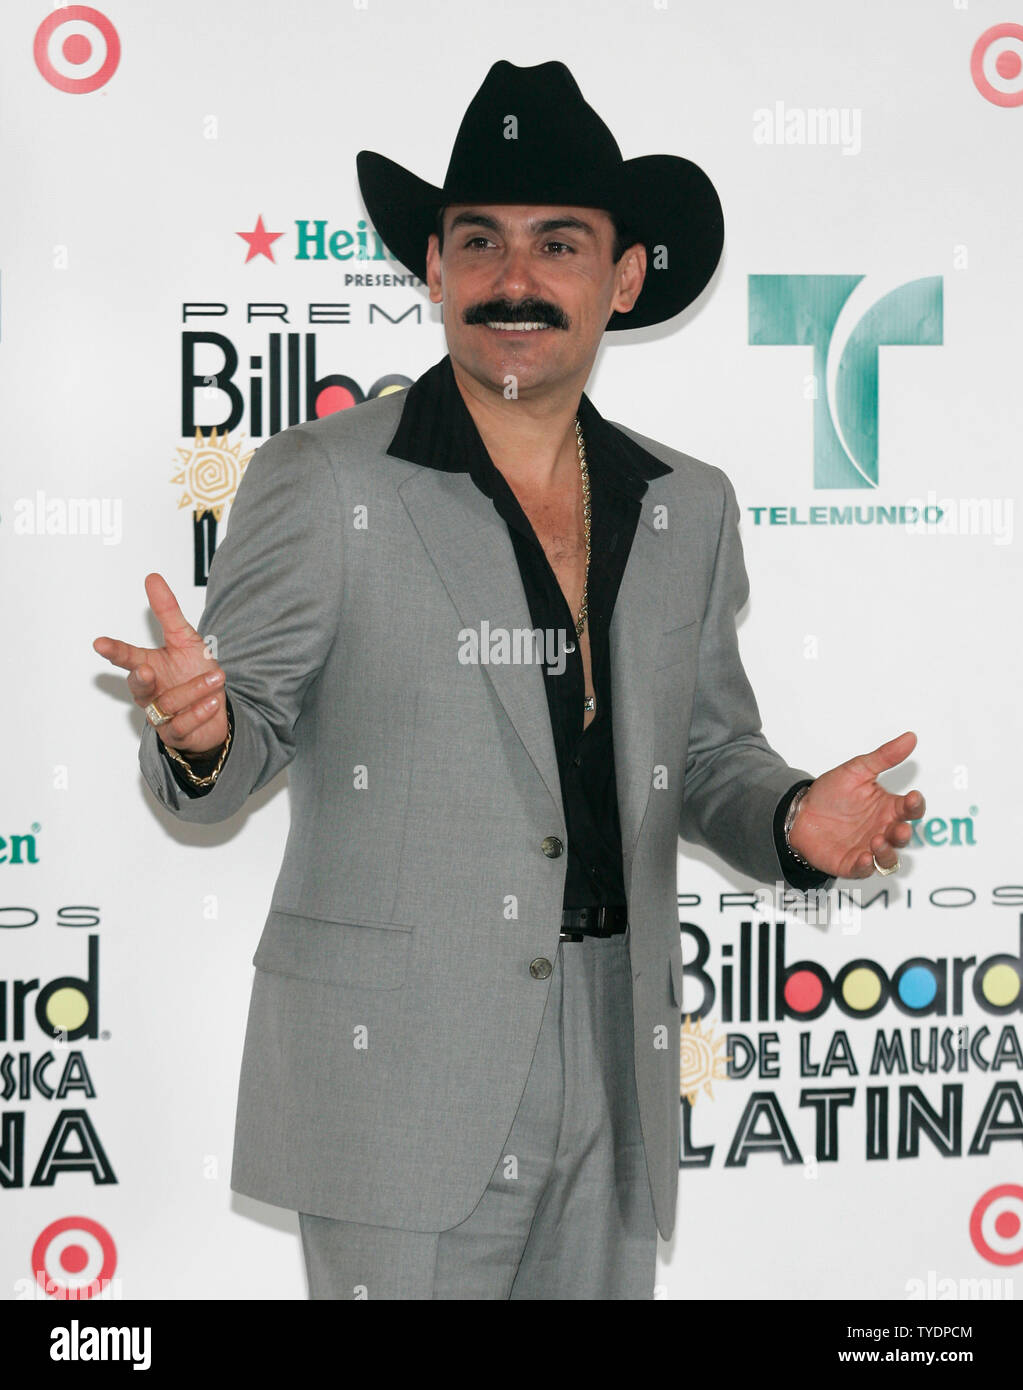 El Chapo de Sinaloa apparaît dans les coulisses du Latin Billboard Awards 2007 au Centre BankUnited à Coral Gables, en Floride, le 26 avril 2007. (Photo d'UPI/Michael Bush) Banque D'Images